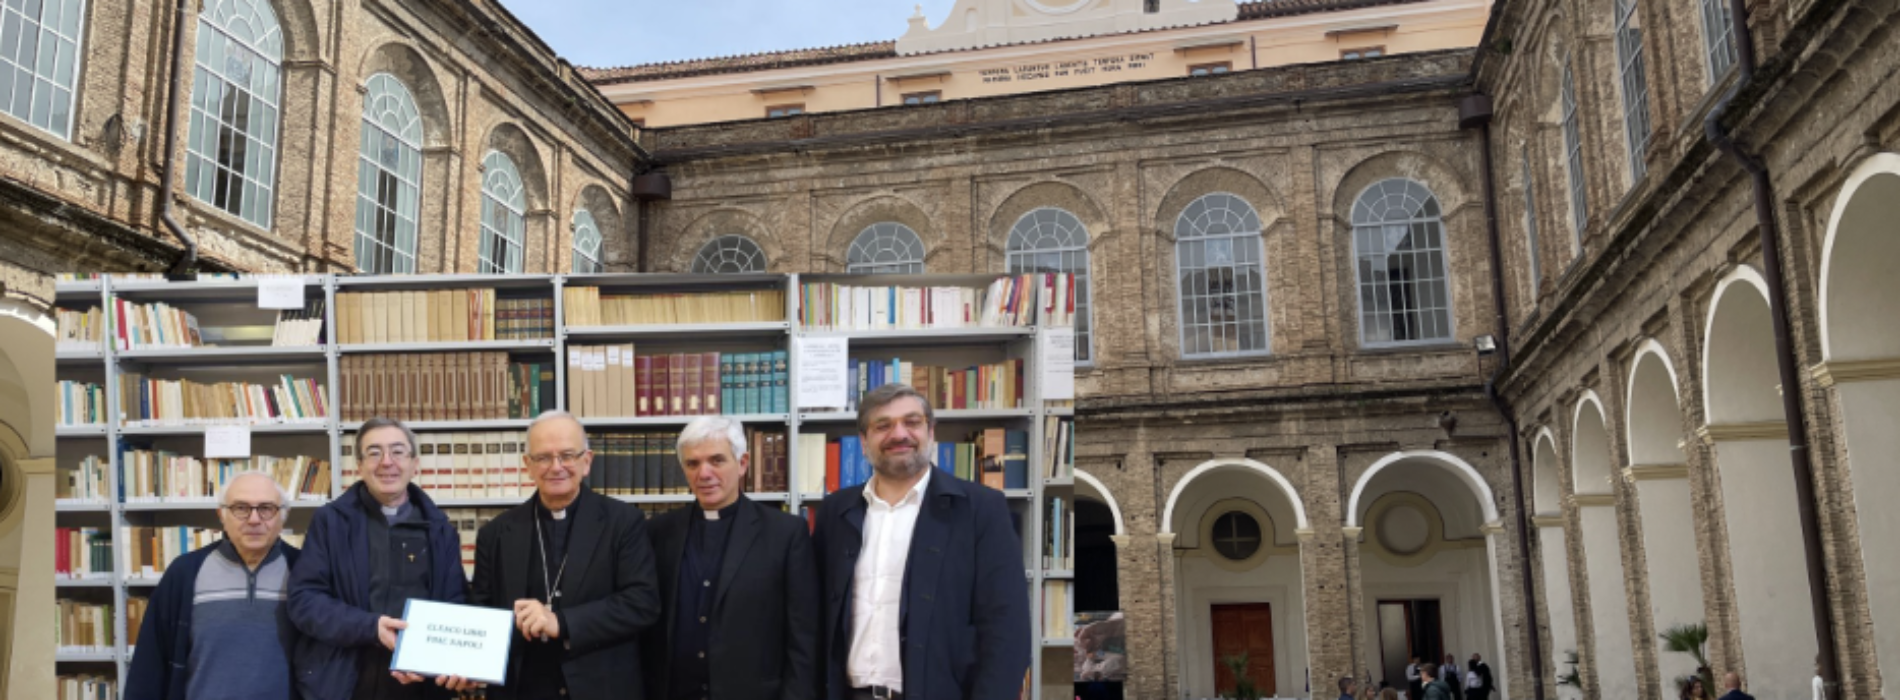 Fondo librario PIME Napoli, consegna alla Diocesi di Aversa